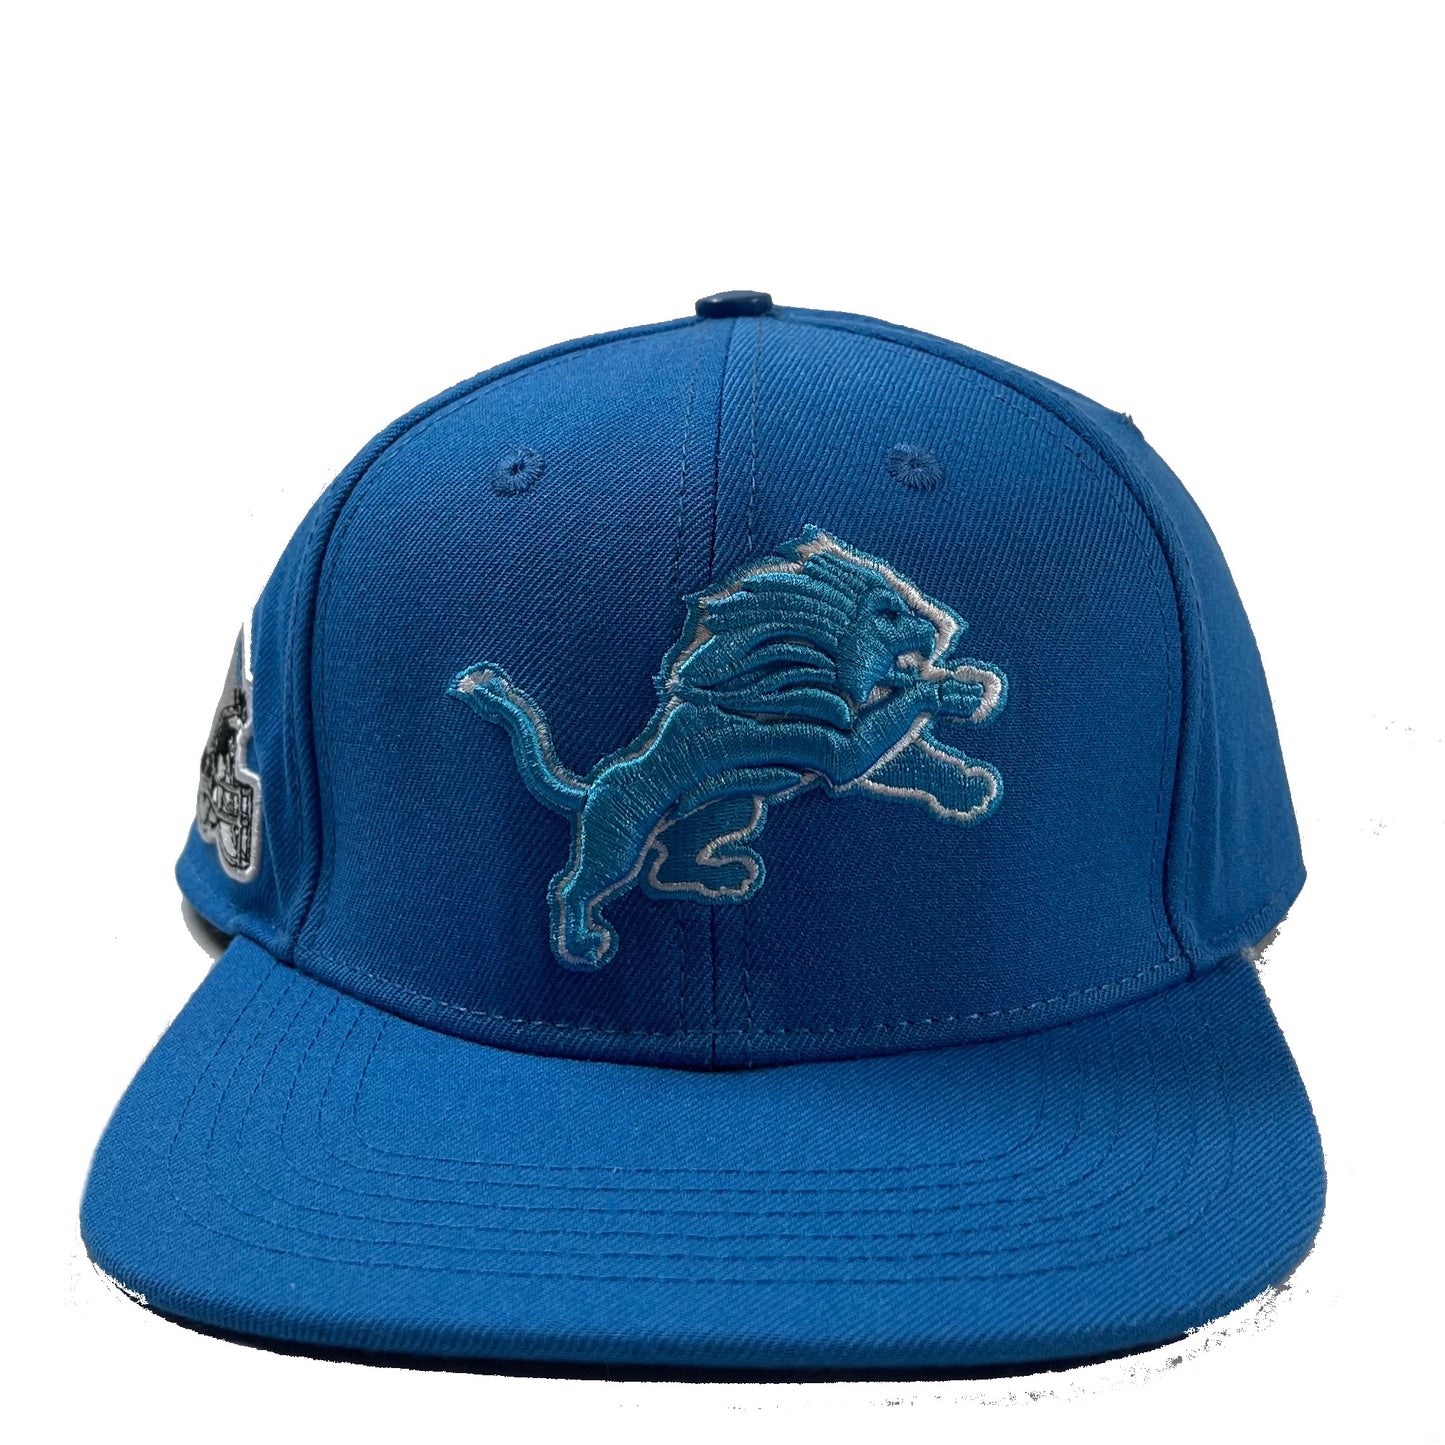 Detroit Lions (Blue) Snapback